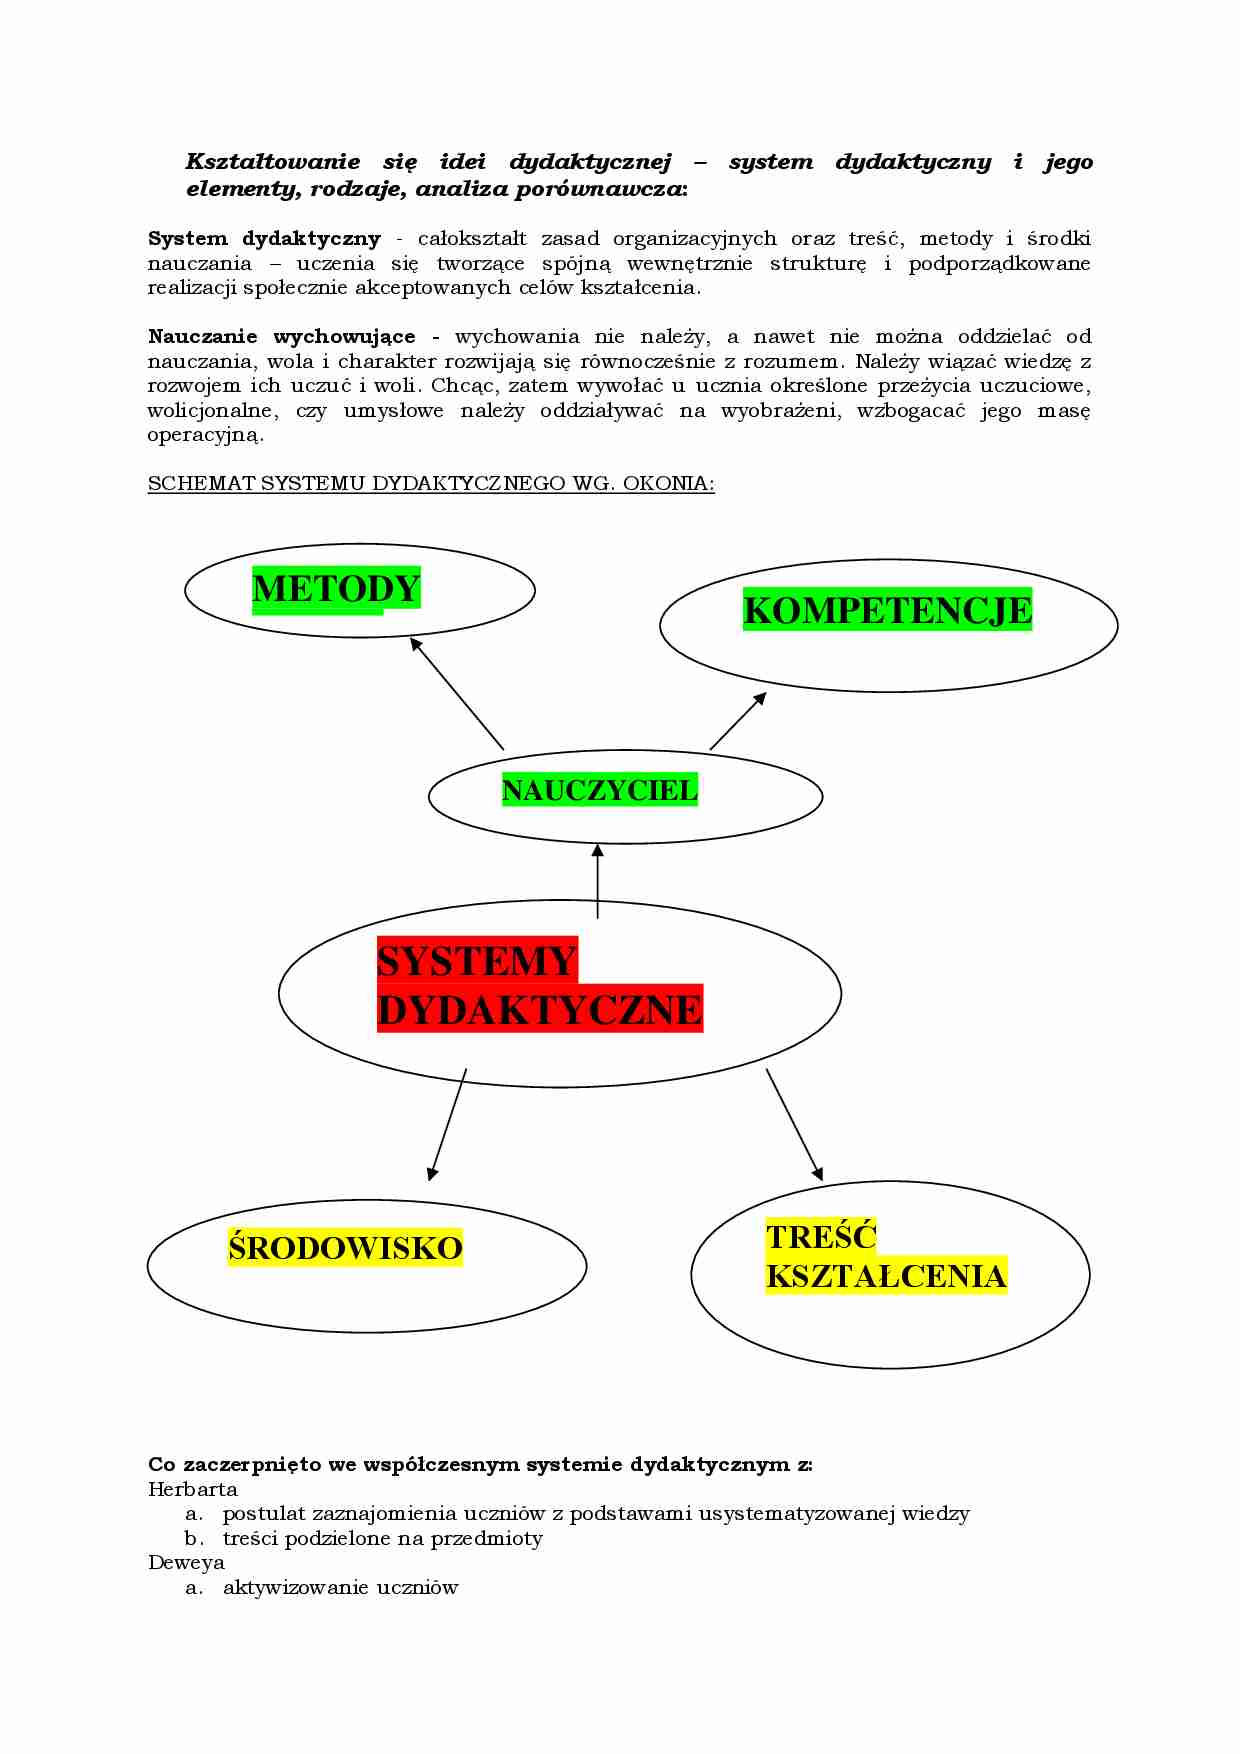 System dydaktyczny i jego elementy, rodzaje, analiza porównawcza - strona 1